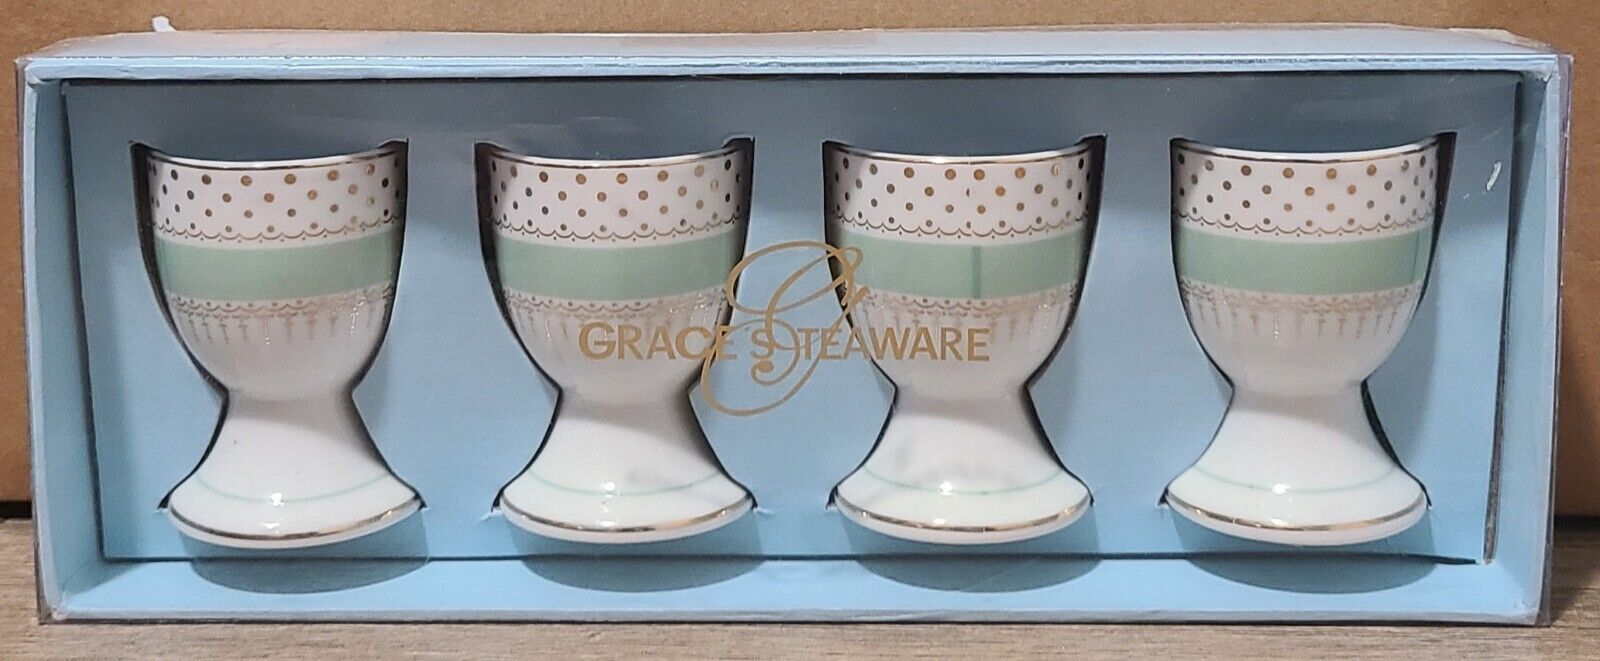 Grace\'s Teaware Set of 4 Porcelain EGG CUPS Teal, Gold & Ivory NEW NIB 